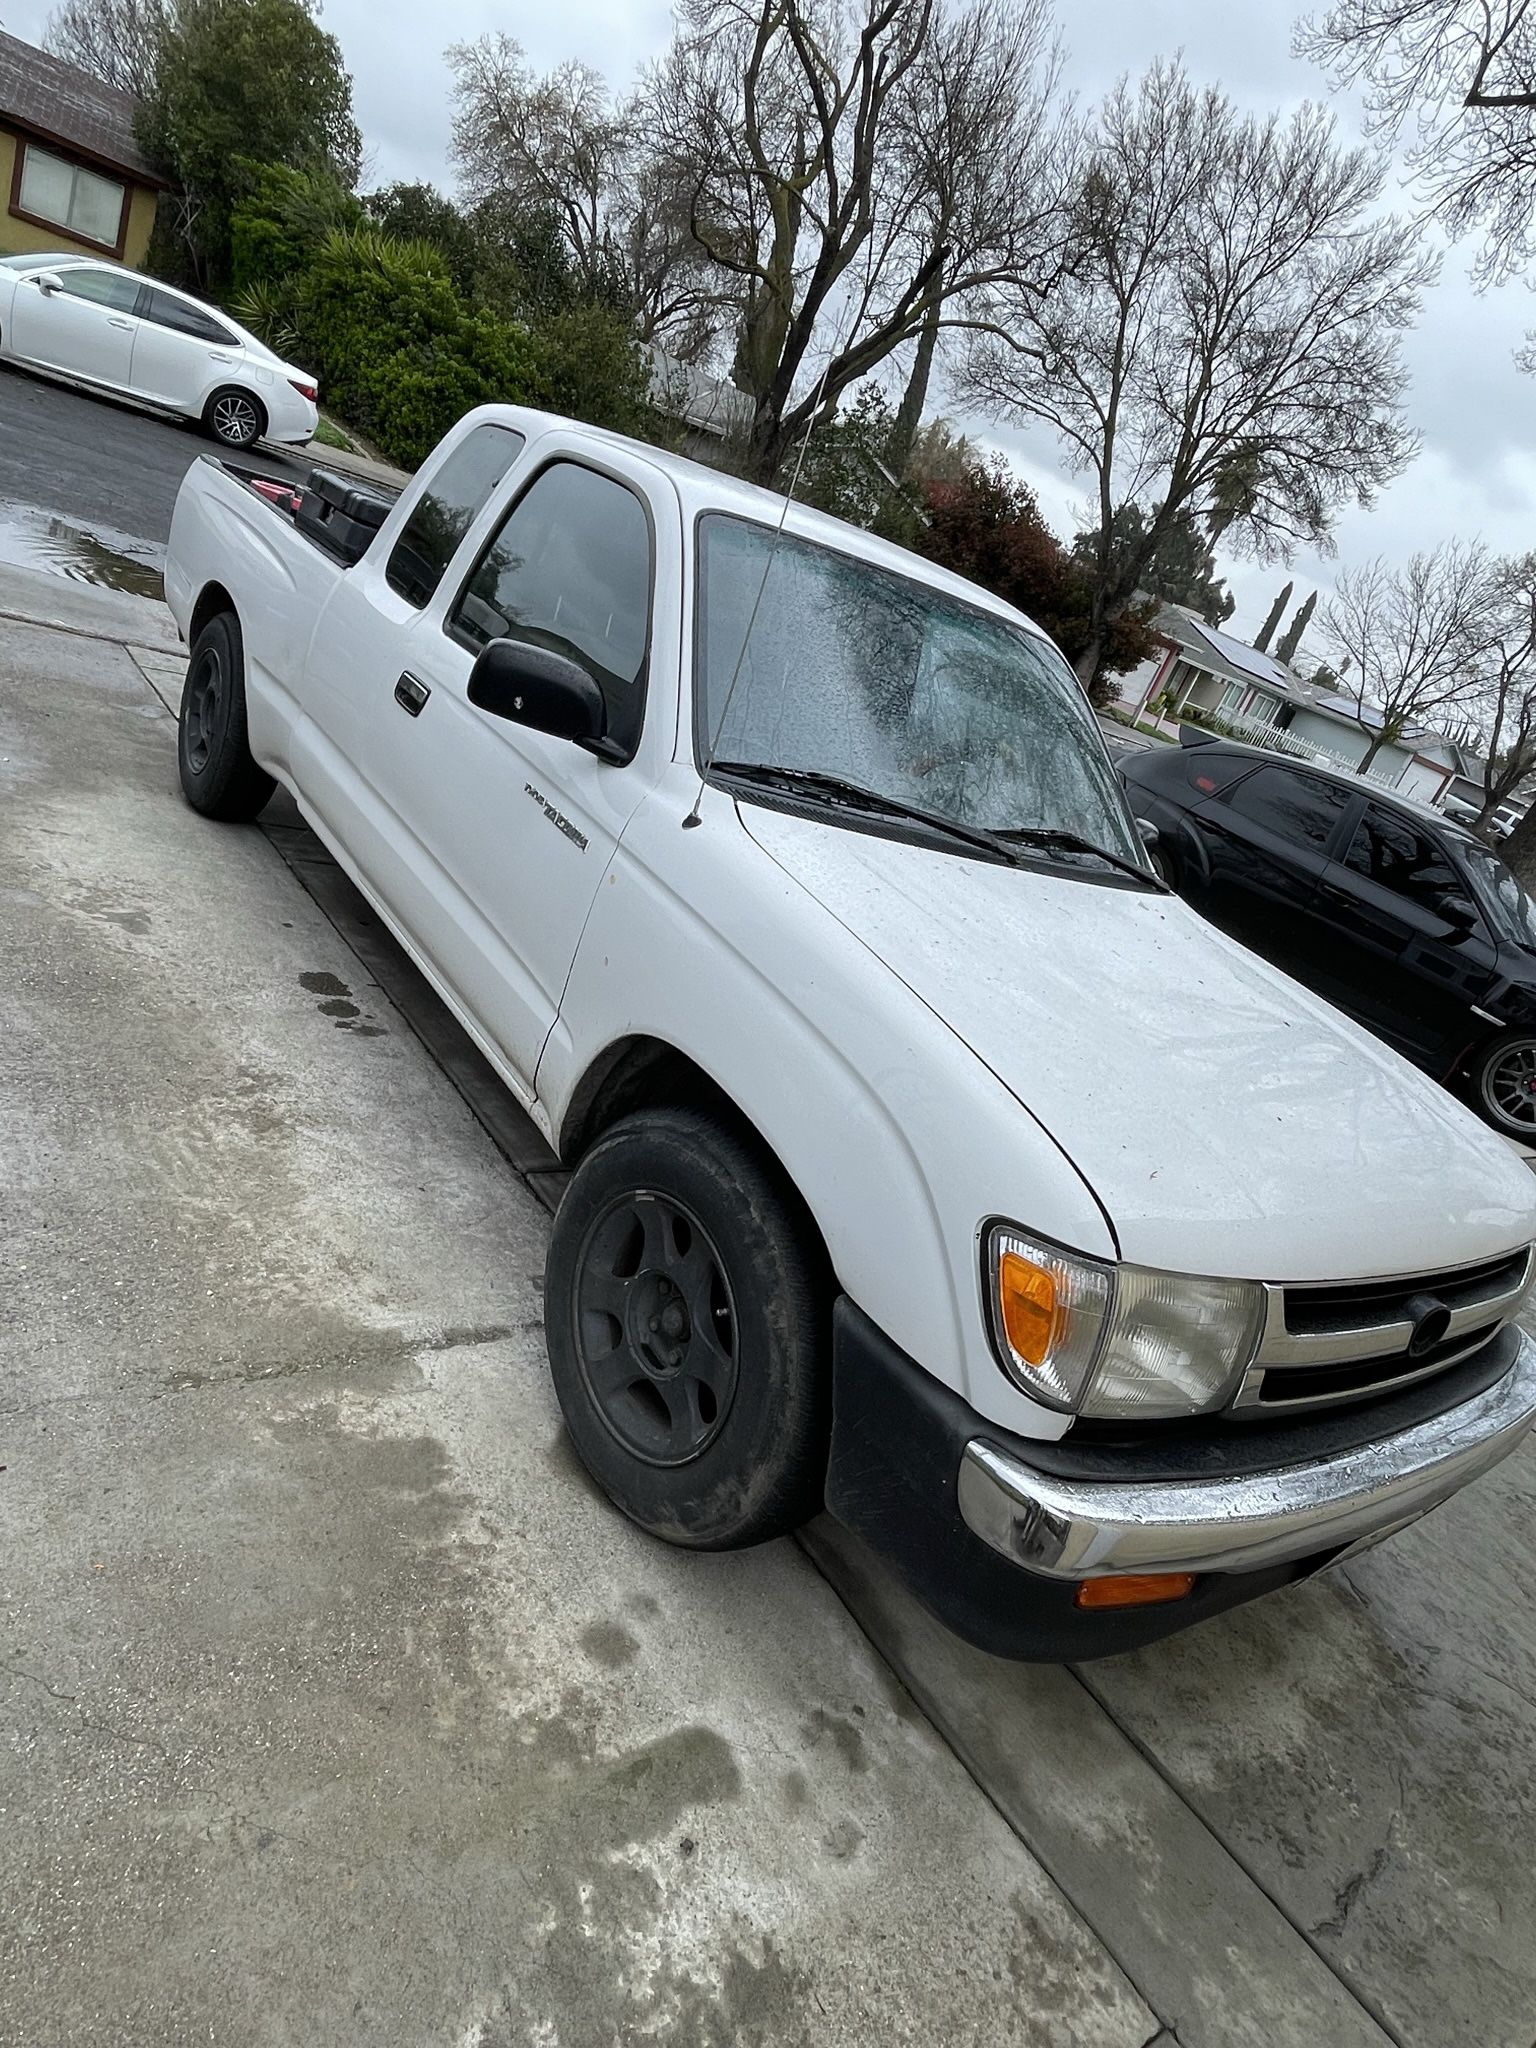 1997 Toyota Tacoma